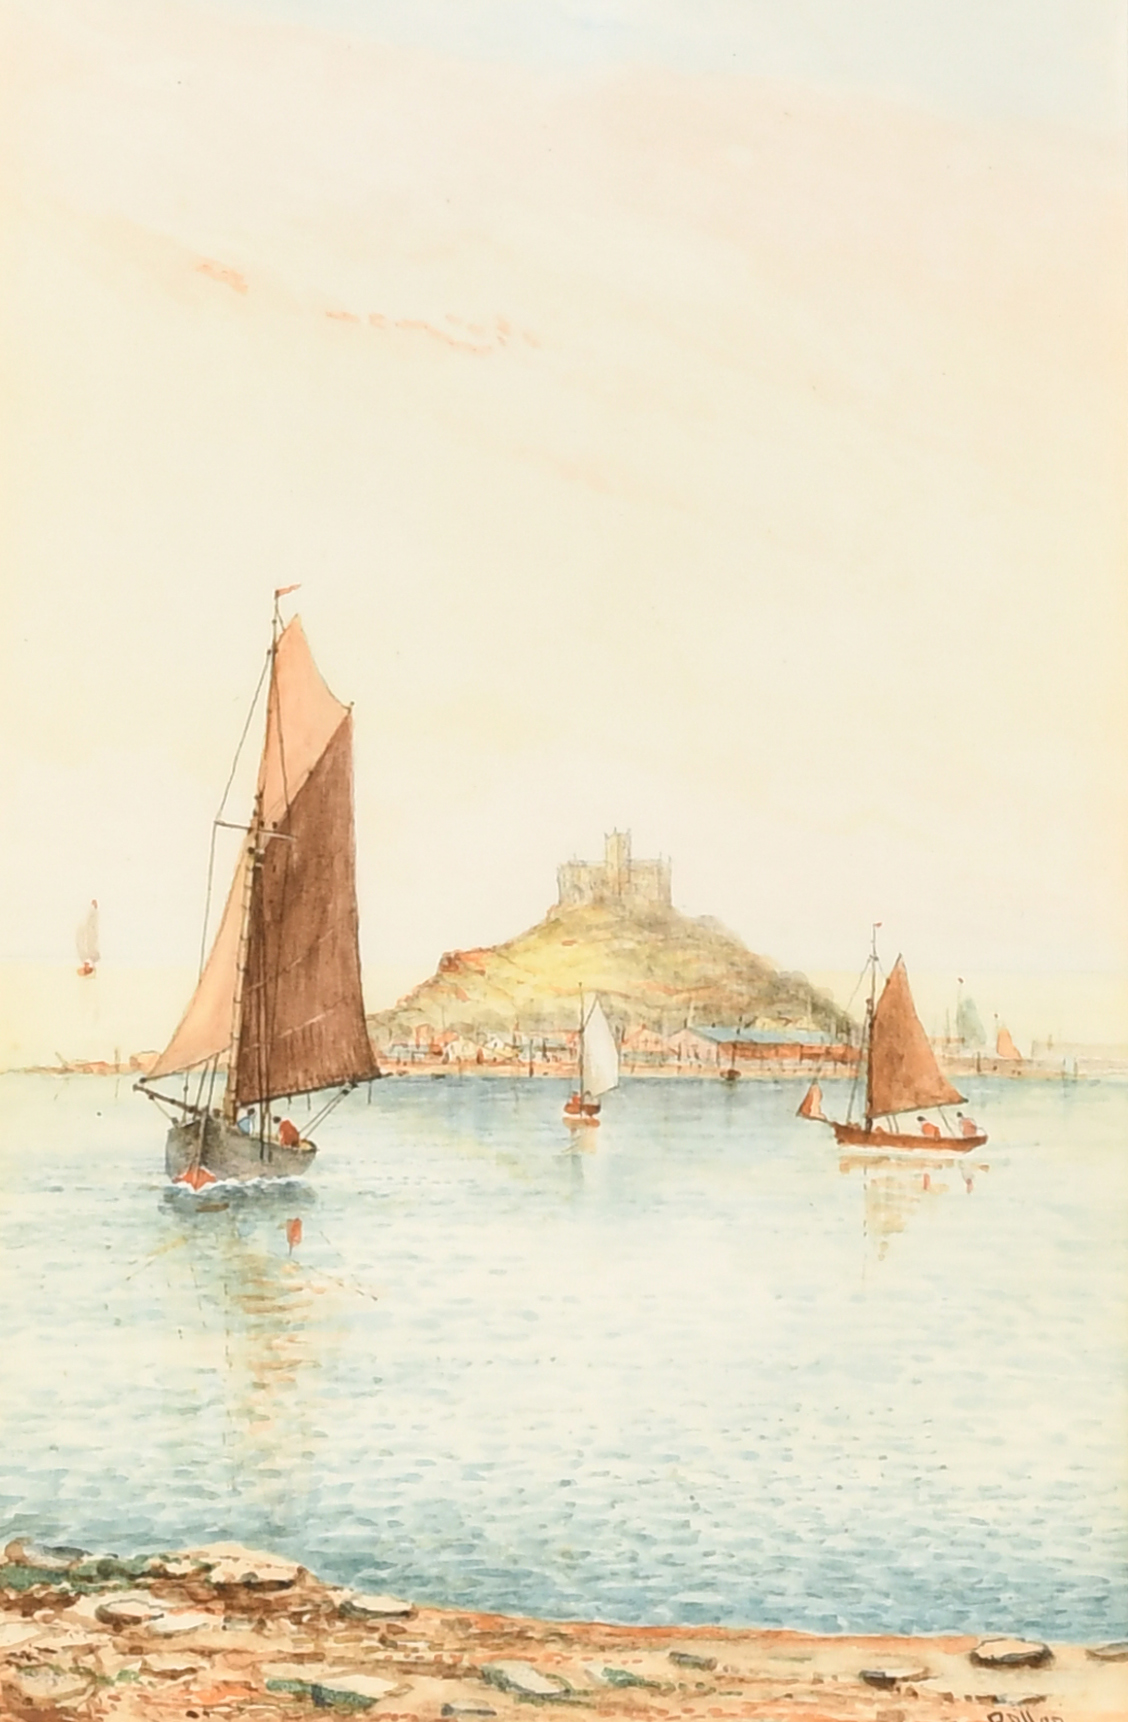 R. Allan (19th-20th Century) British. "Penarth", Watercolour, Signed, inscribed verso, 9" x 6" (22.8